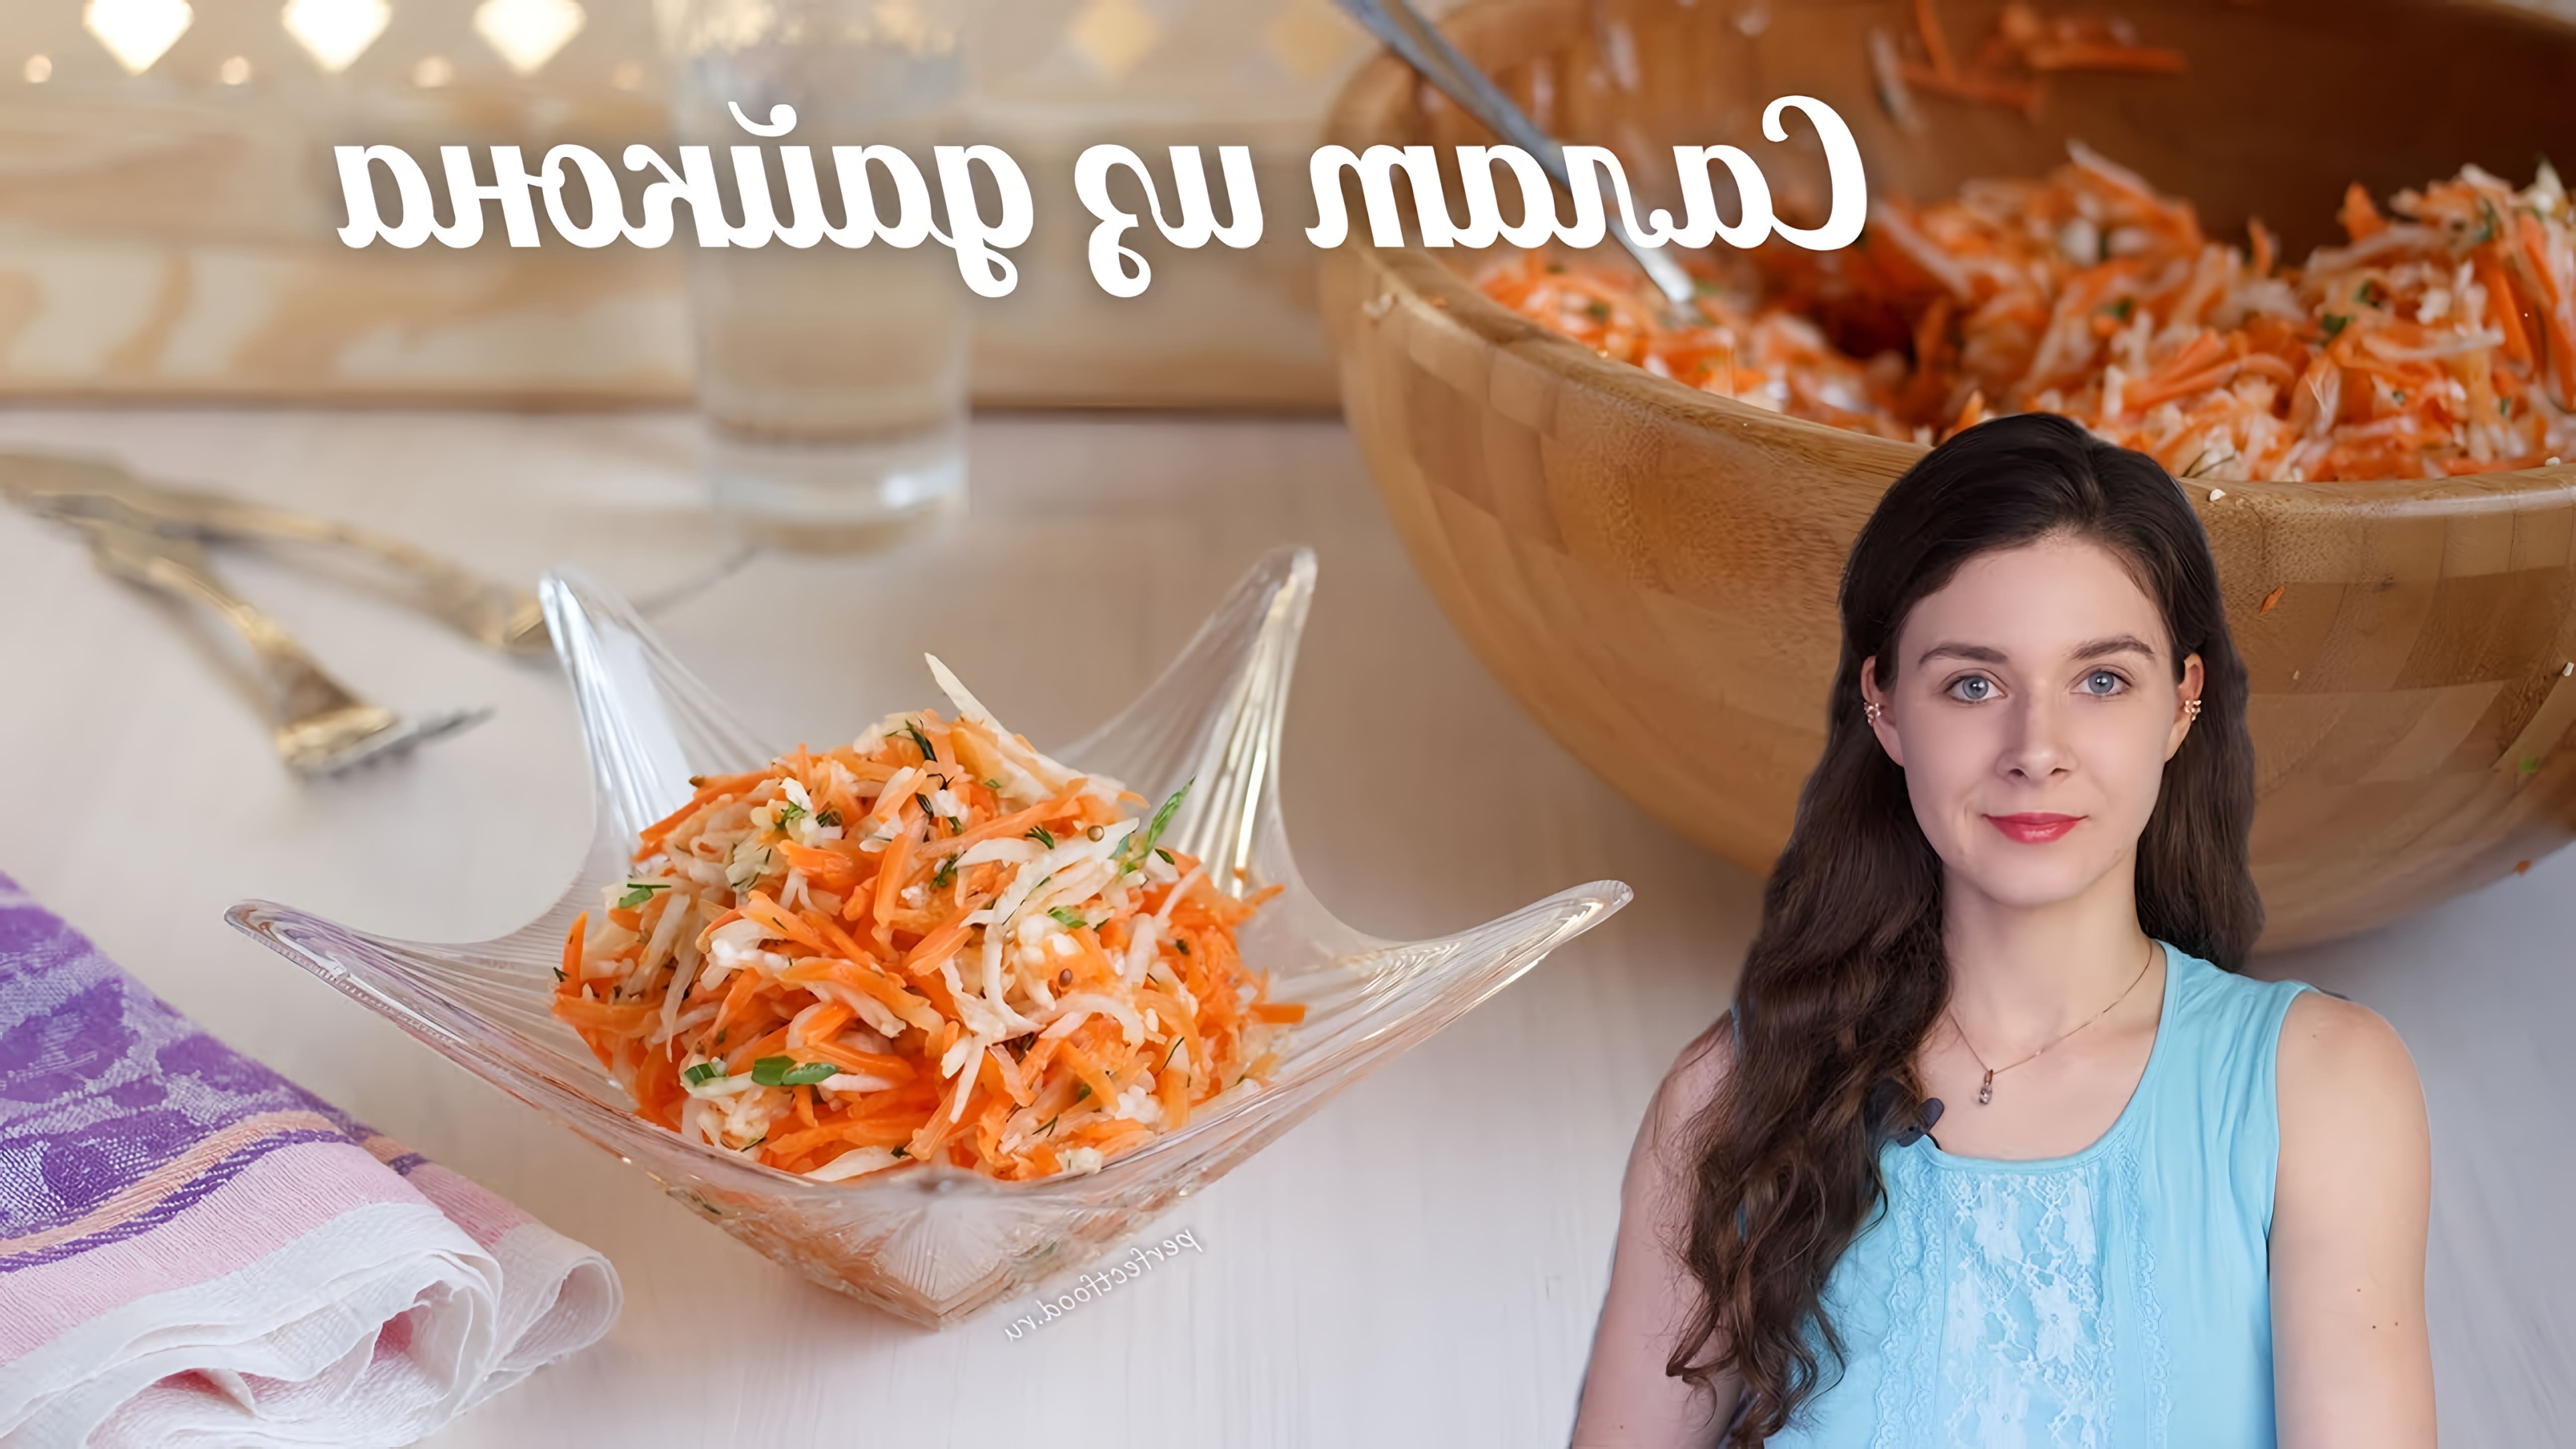 В этом видео Елена готовит салат из дайкона и моркови, который является не только вкусным, но и очень полезным